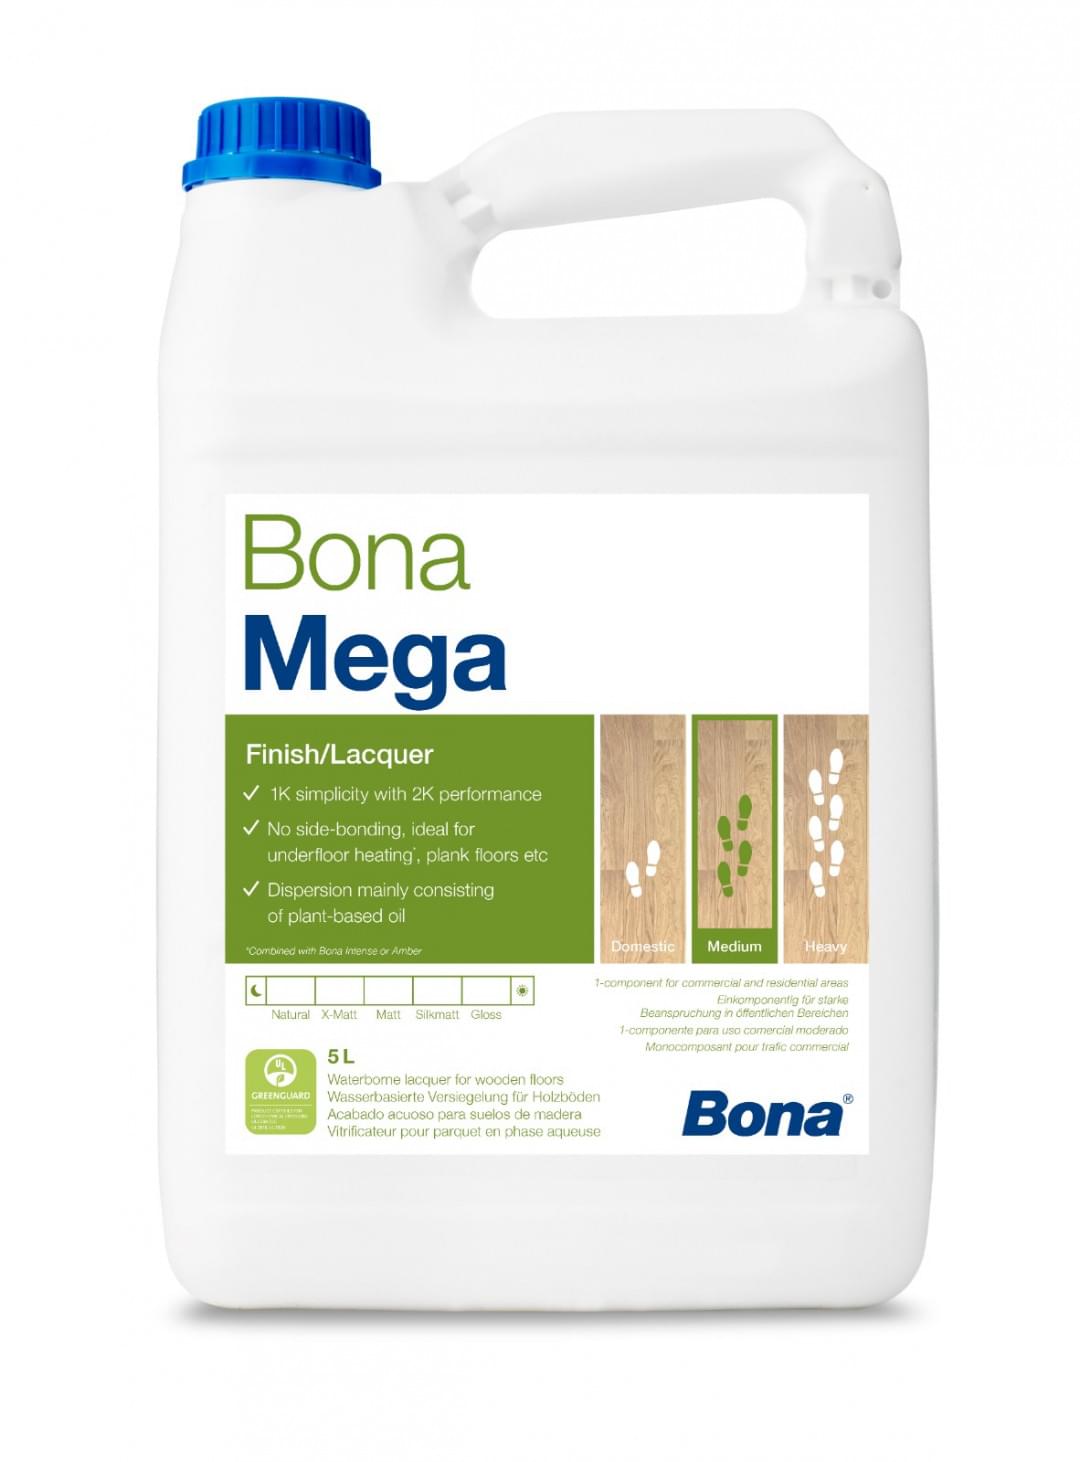 Bona Mega from Bona